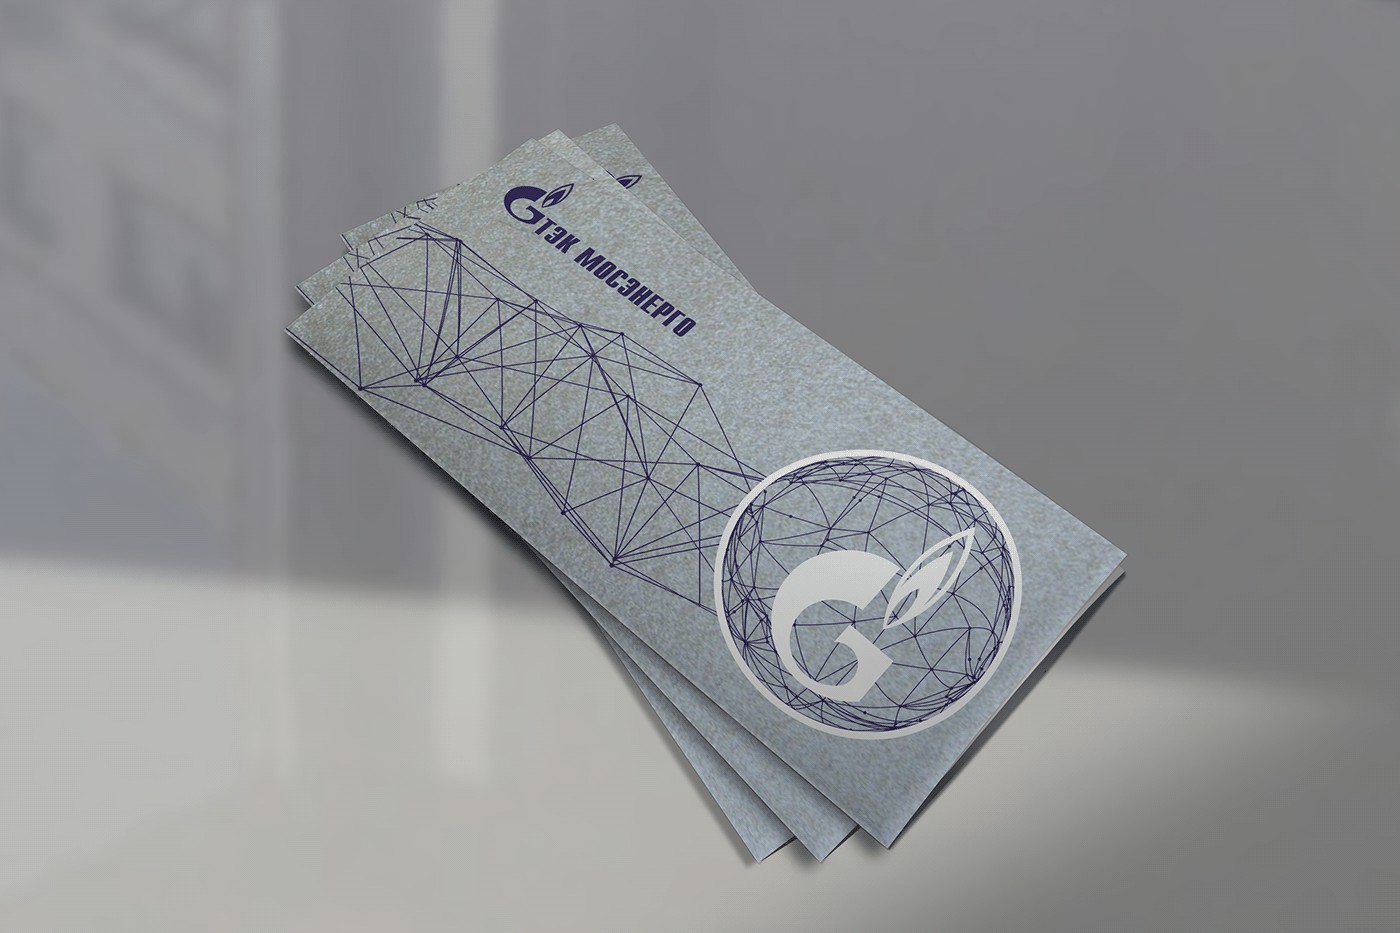 Брендированная открытка Газпром